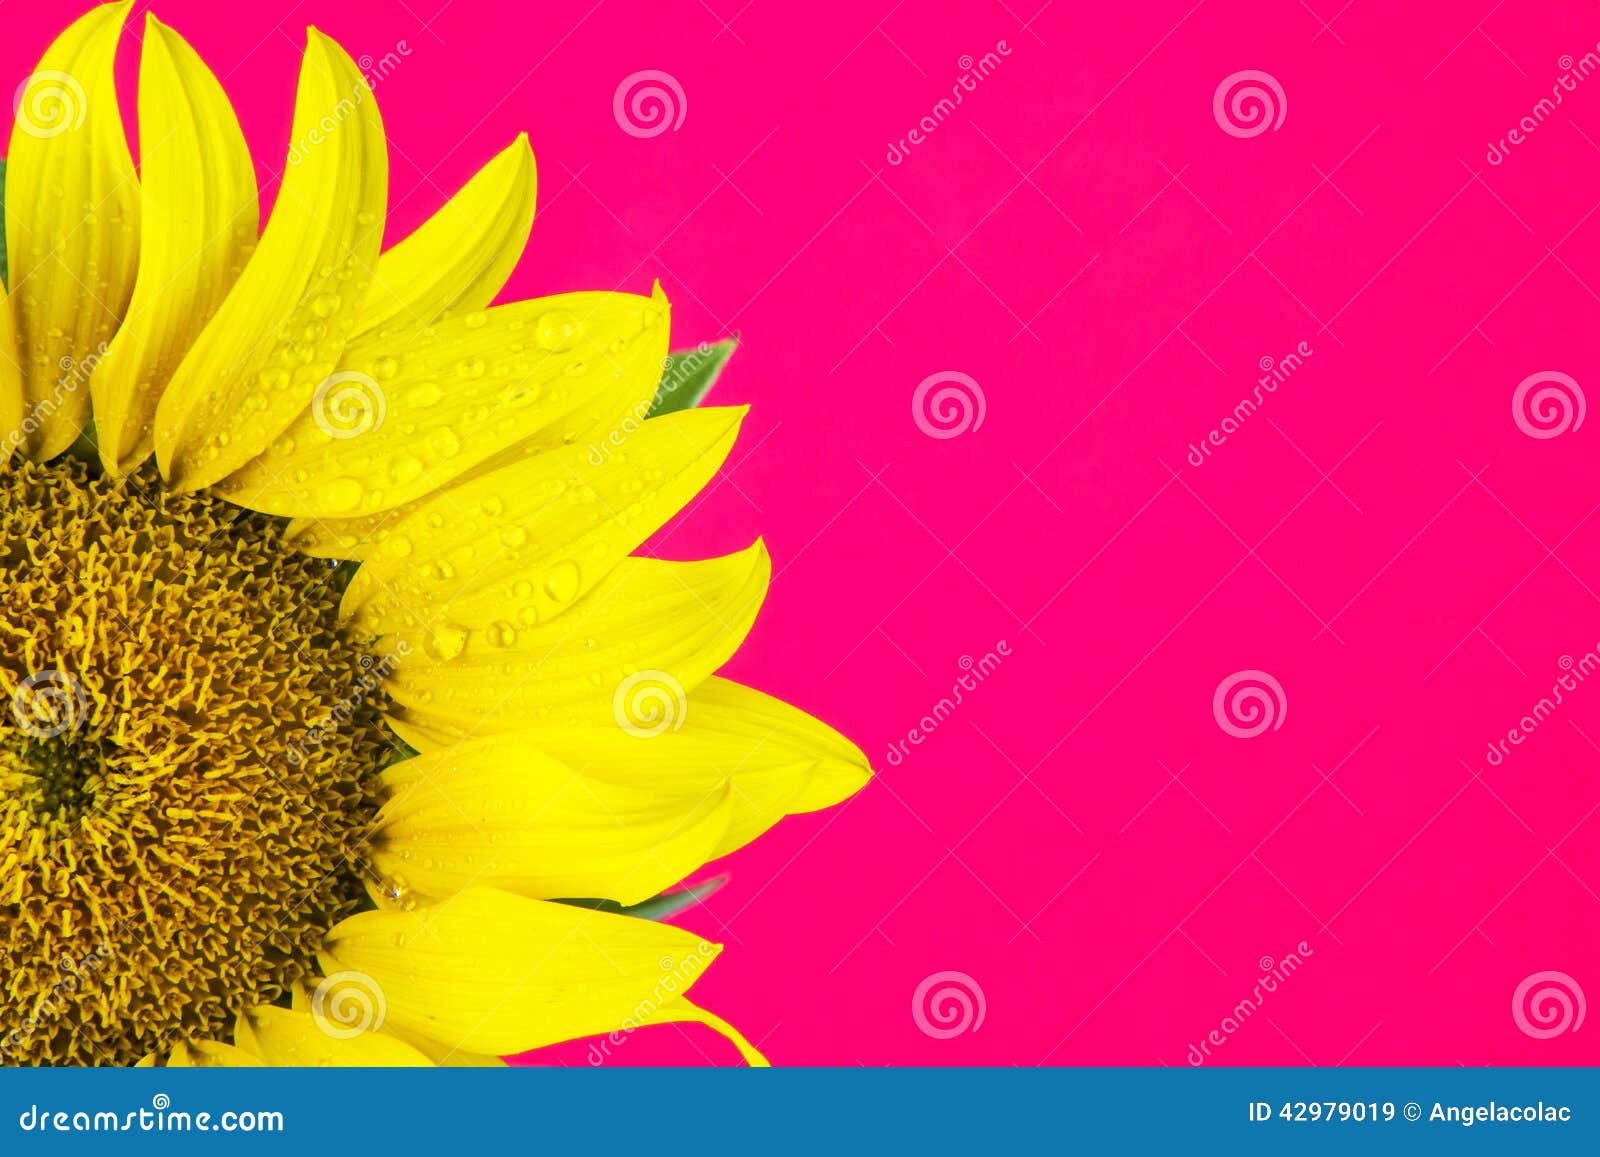 Pink Gerbera  Background  Pink Sunflower HD wallpaper  Pxfuel